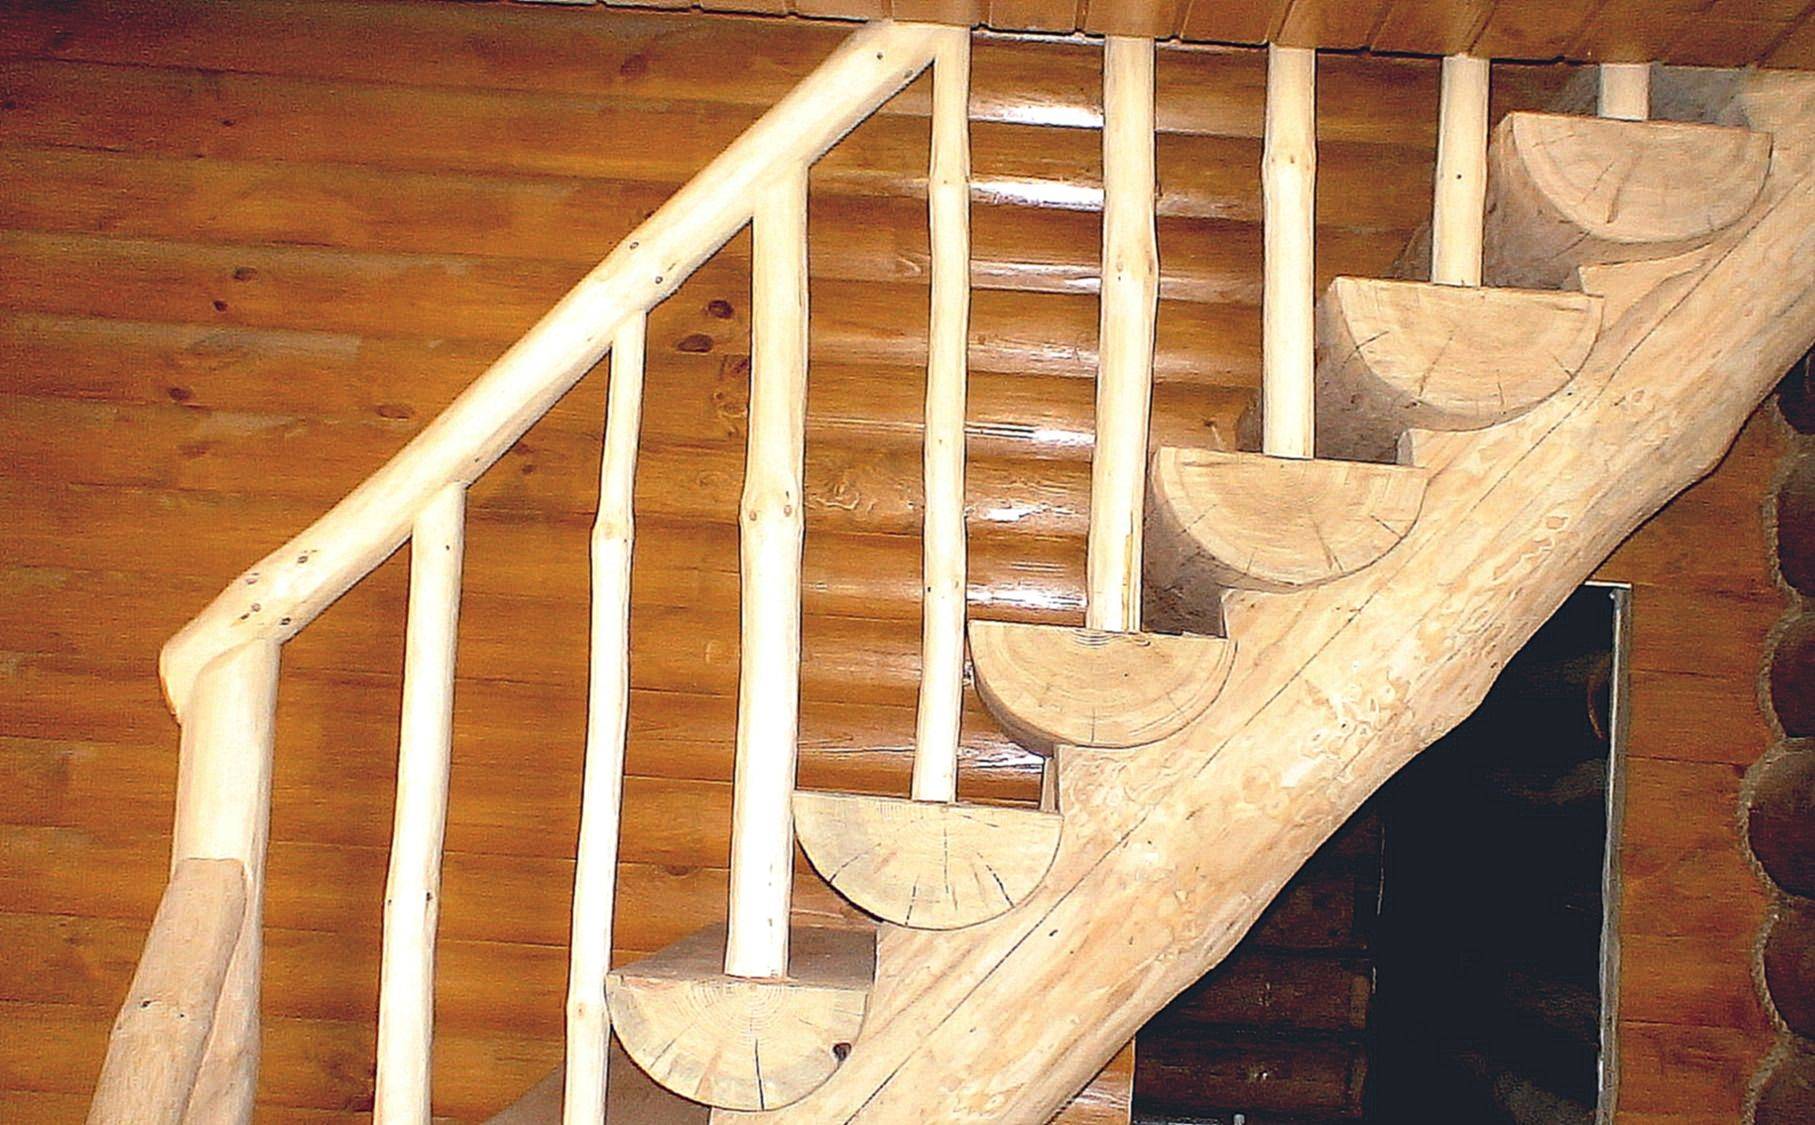 Как сделать винтовую лестницу своими руками – расчет, изготовление и монтаж